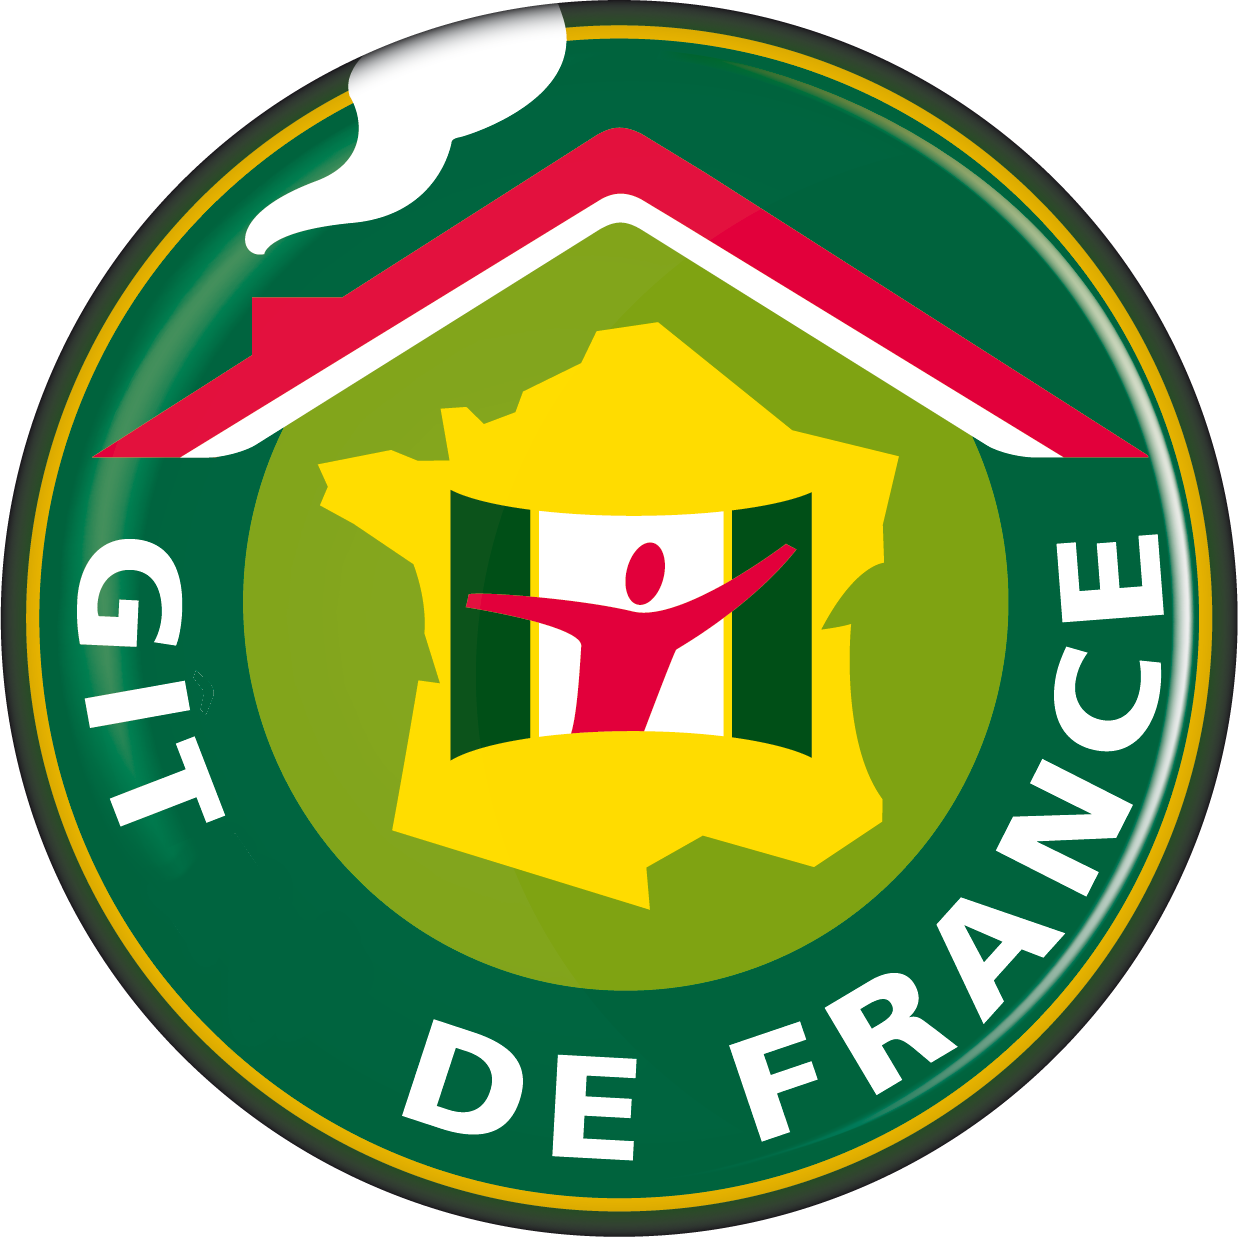 Gite De France - Gite De France (1238x1237)